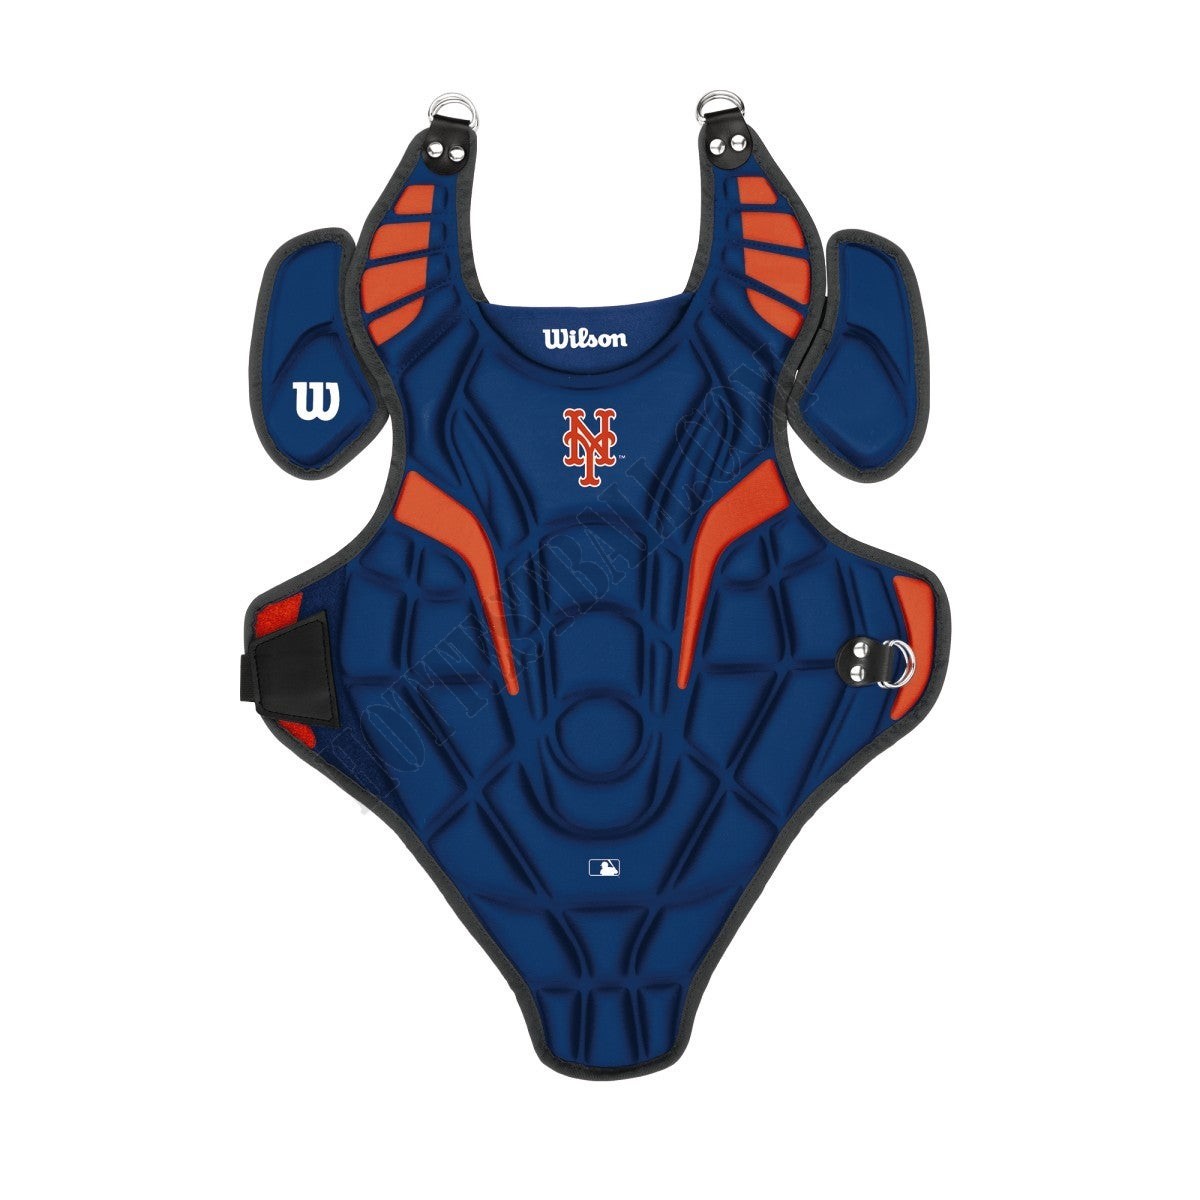 EZ Gear Catcher's Kit - New York Mets - Wilson Discount Store - -0